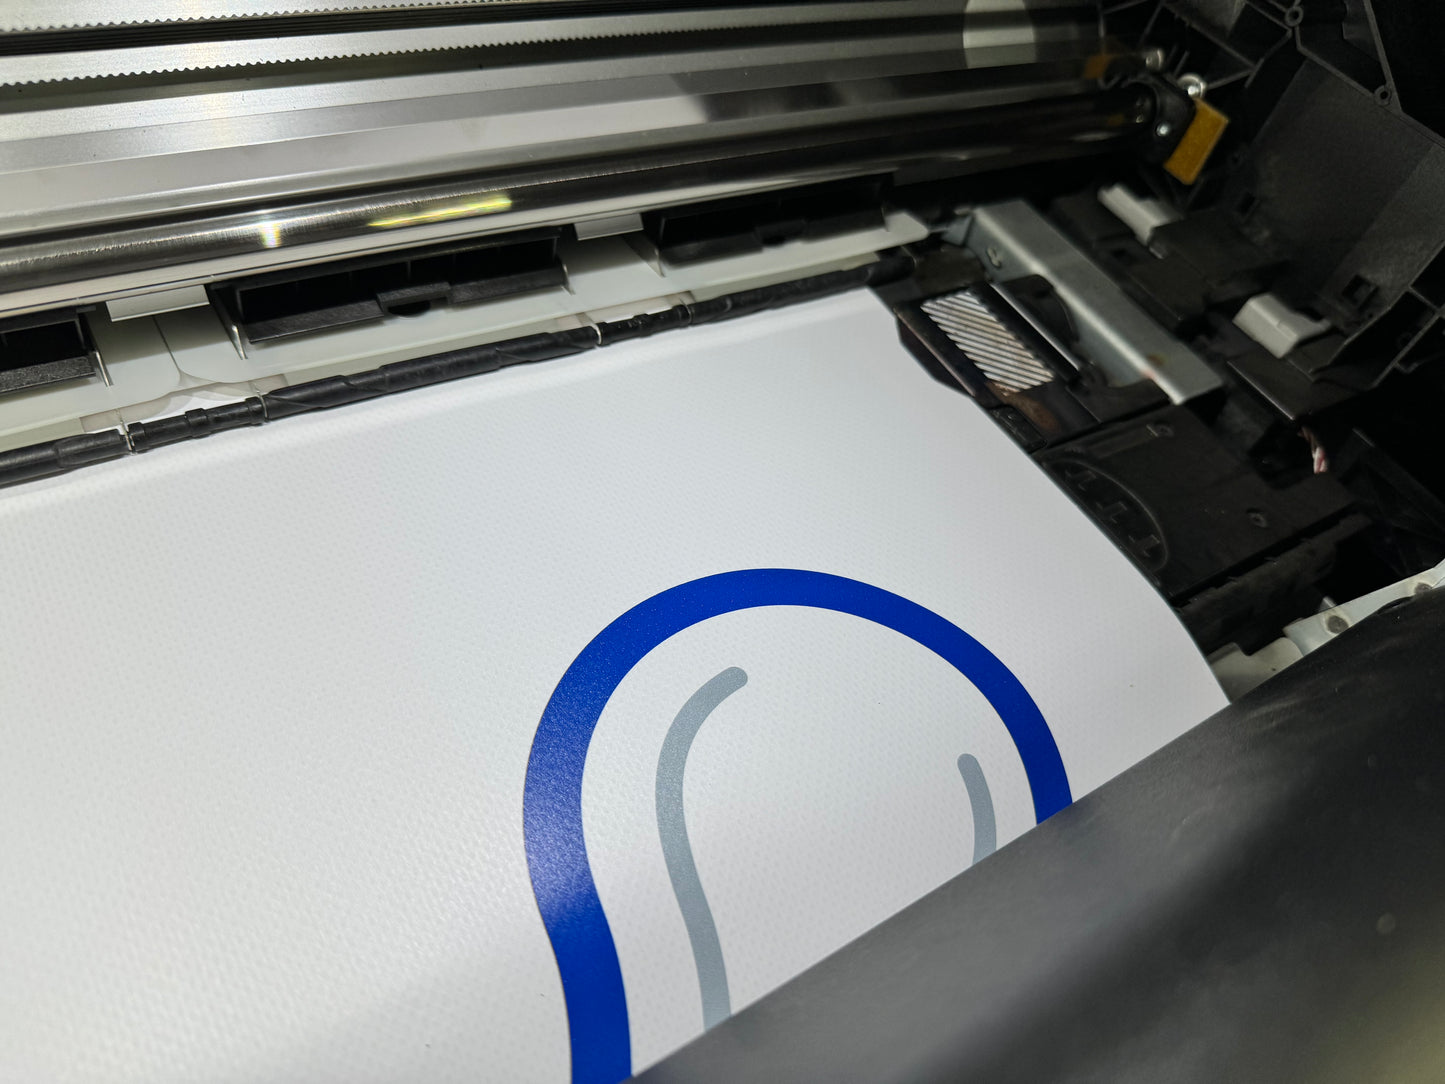 HP Latex 330 Wide Format Printer